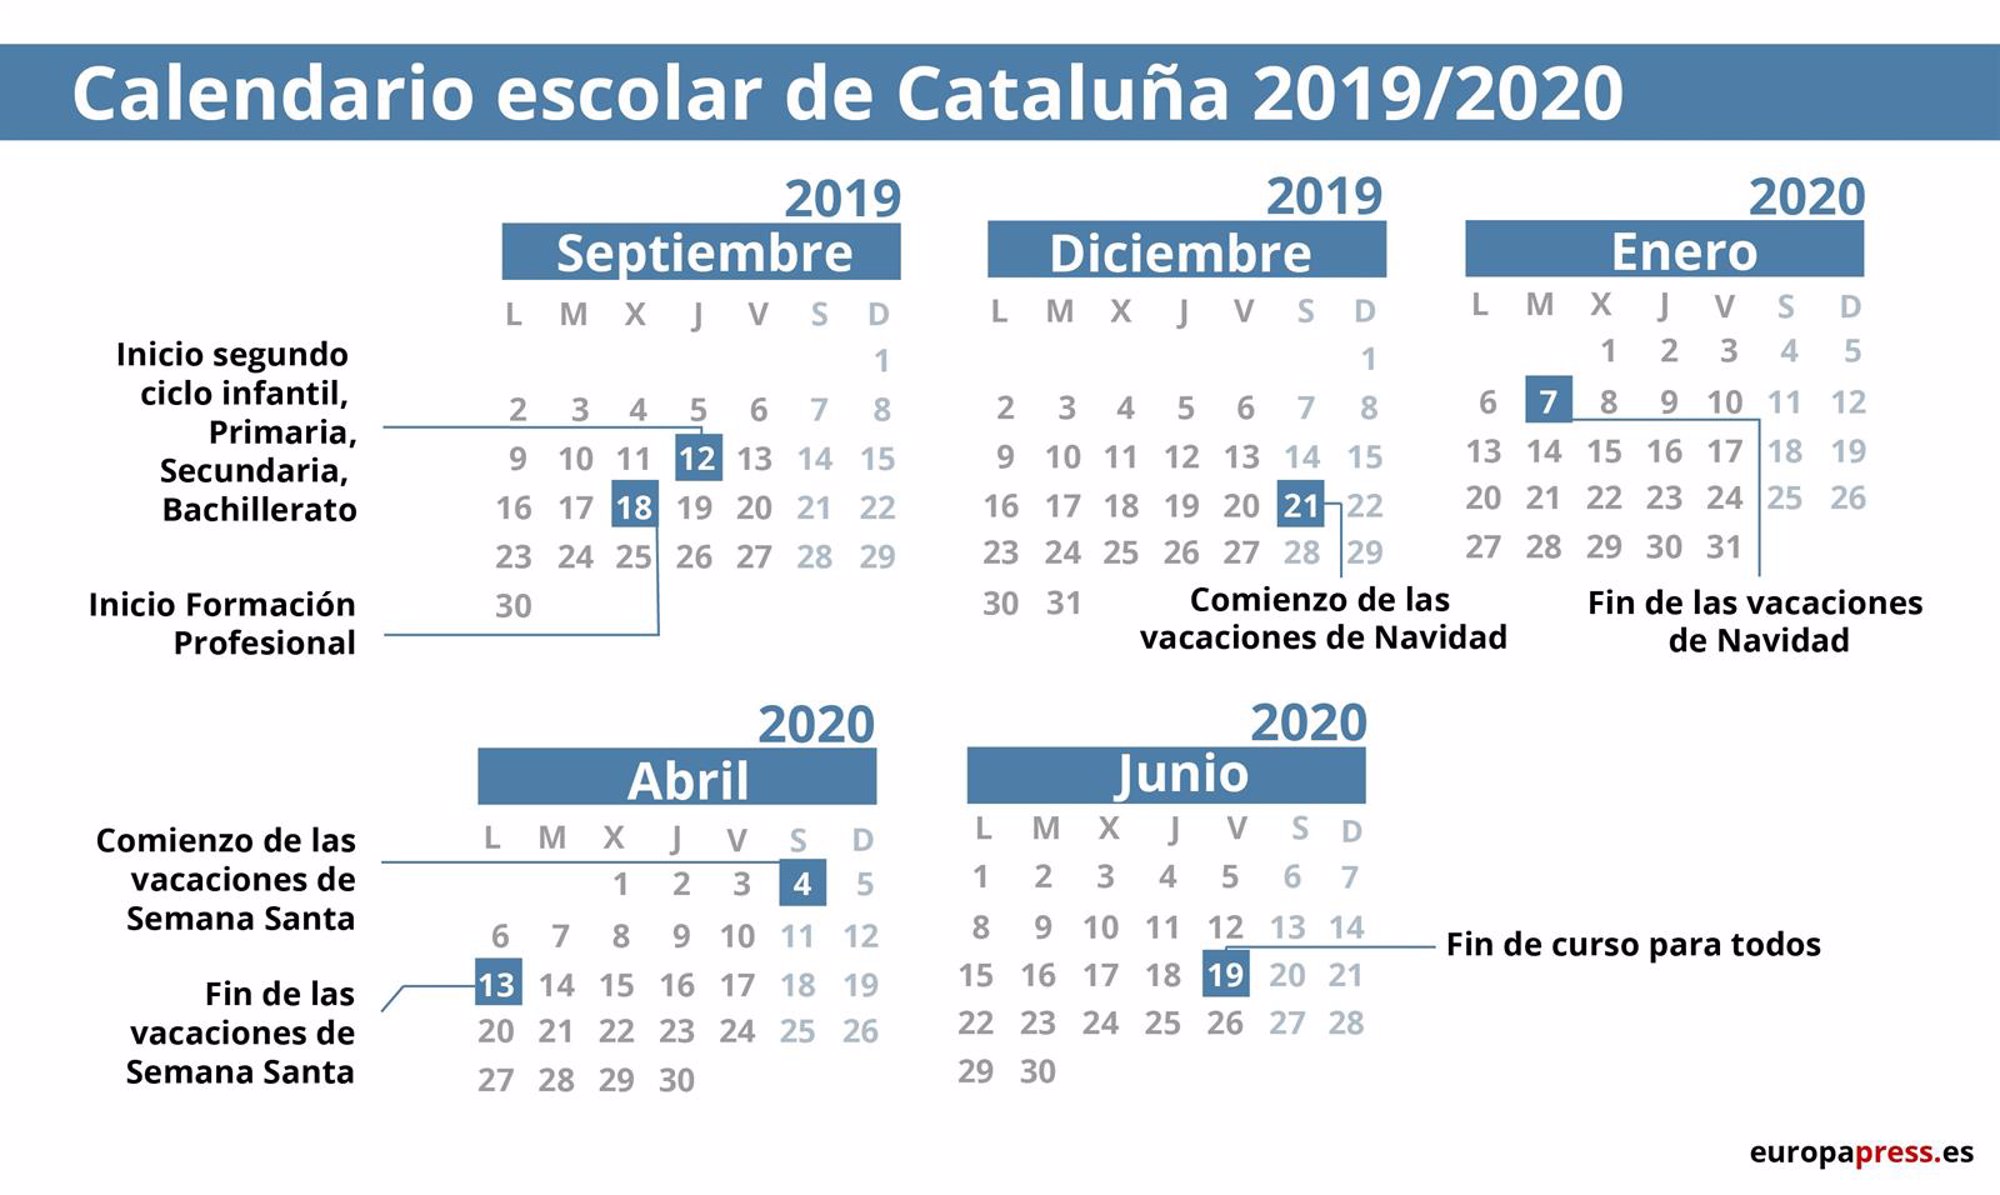 Calendario escolar de Cataluña 2019/2020